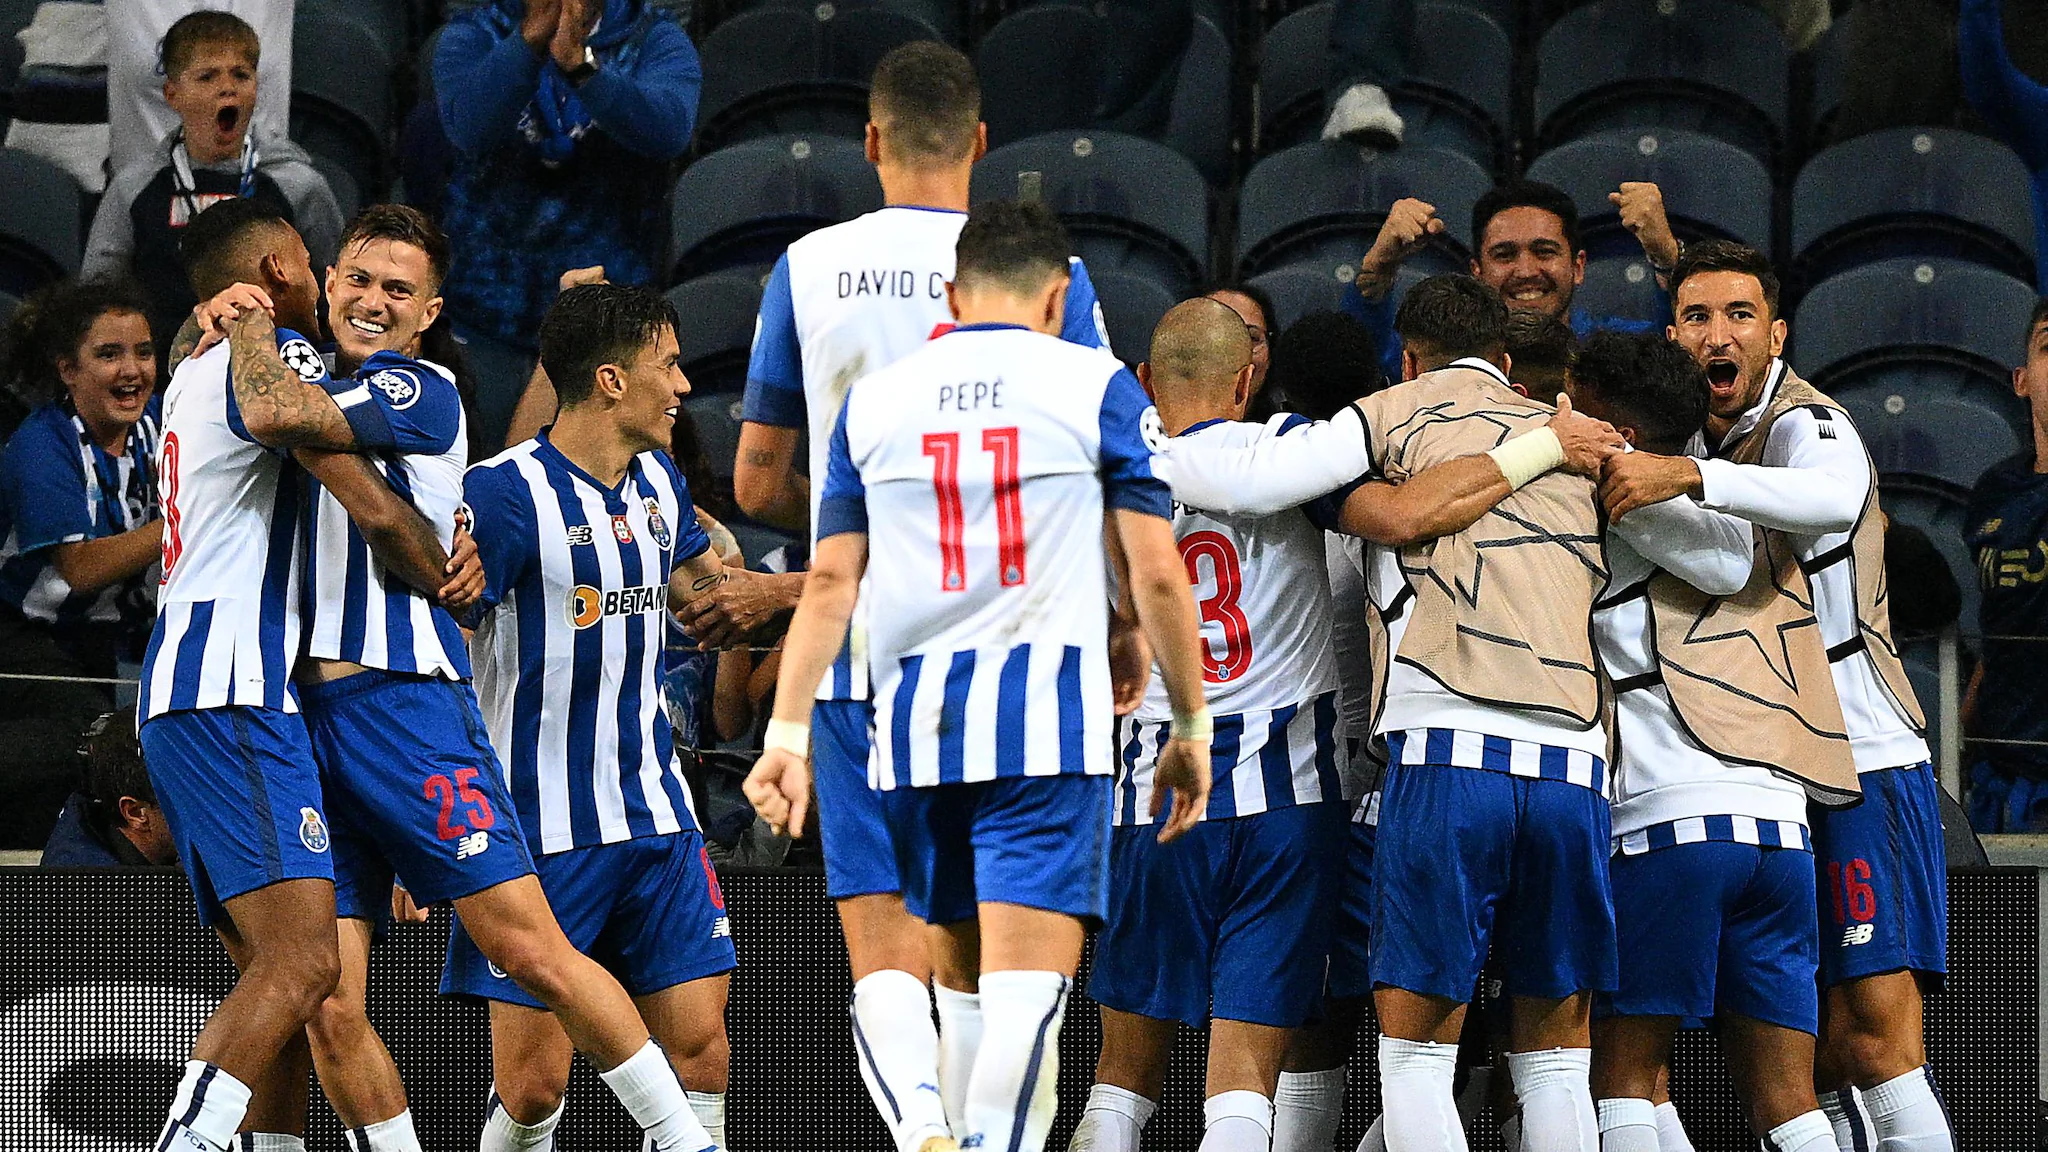 UEFA Champions League/ Resumos de terça-feira: Porto vence grupo, Sporting cai para a Europa League, Tottenham e Frankfurt apurados